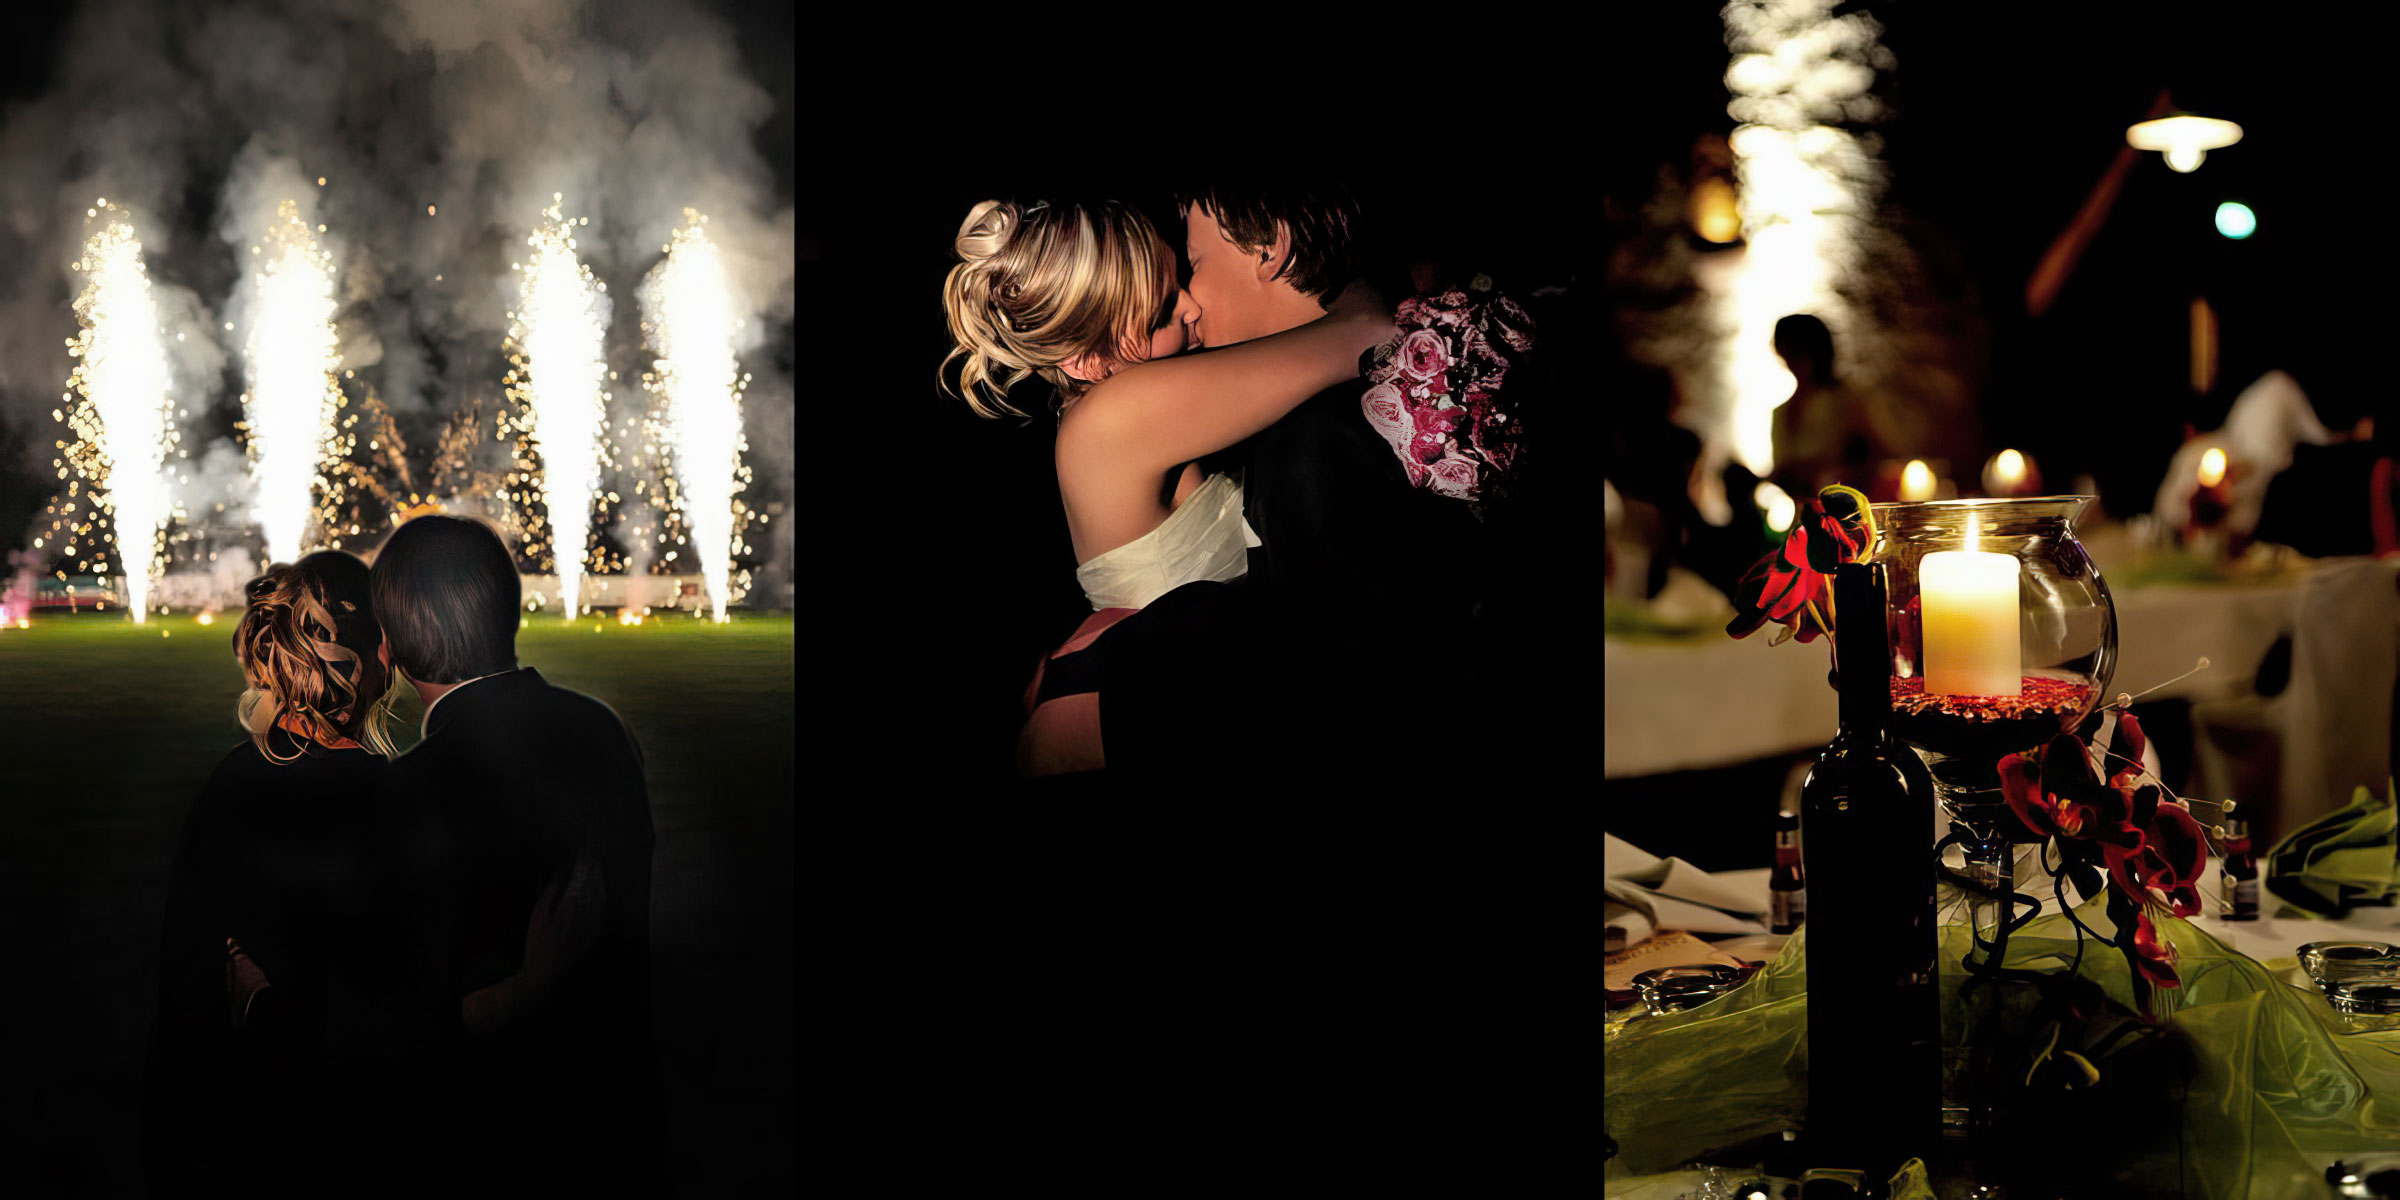 event-fotograf-esslingen-michael-diehl-photography-brautpaar-kuessen-feuerwerk-romantik